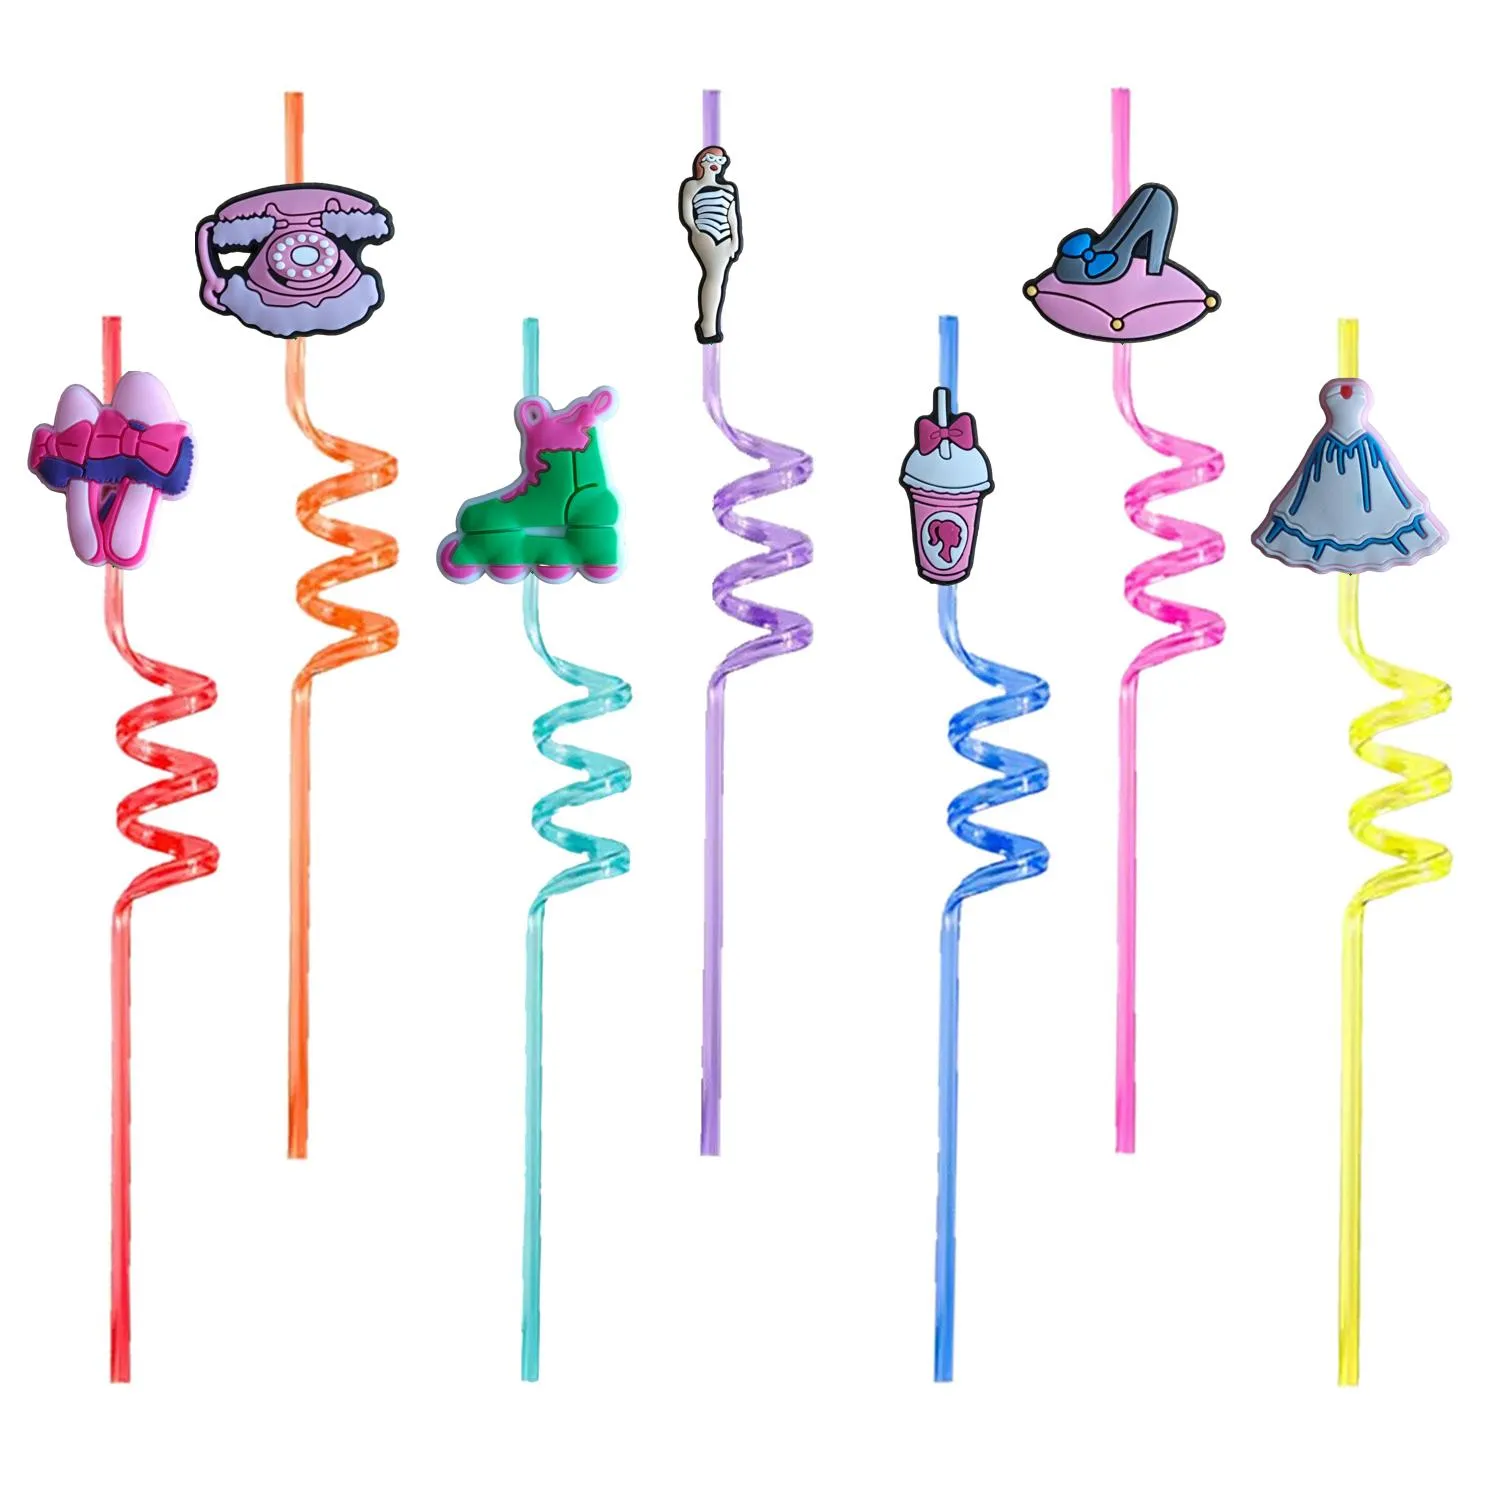 Autres produits en plastique jetables rose 2 dessin animé fou sur le thème STS Boire pour la fête pop fournit les filles enfants favorisent les enfants décorati otofy